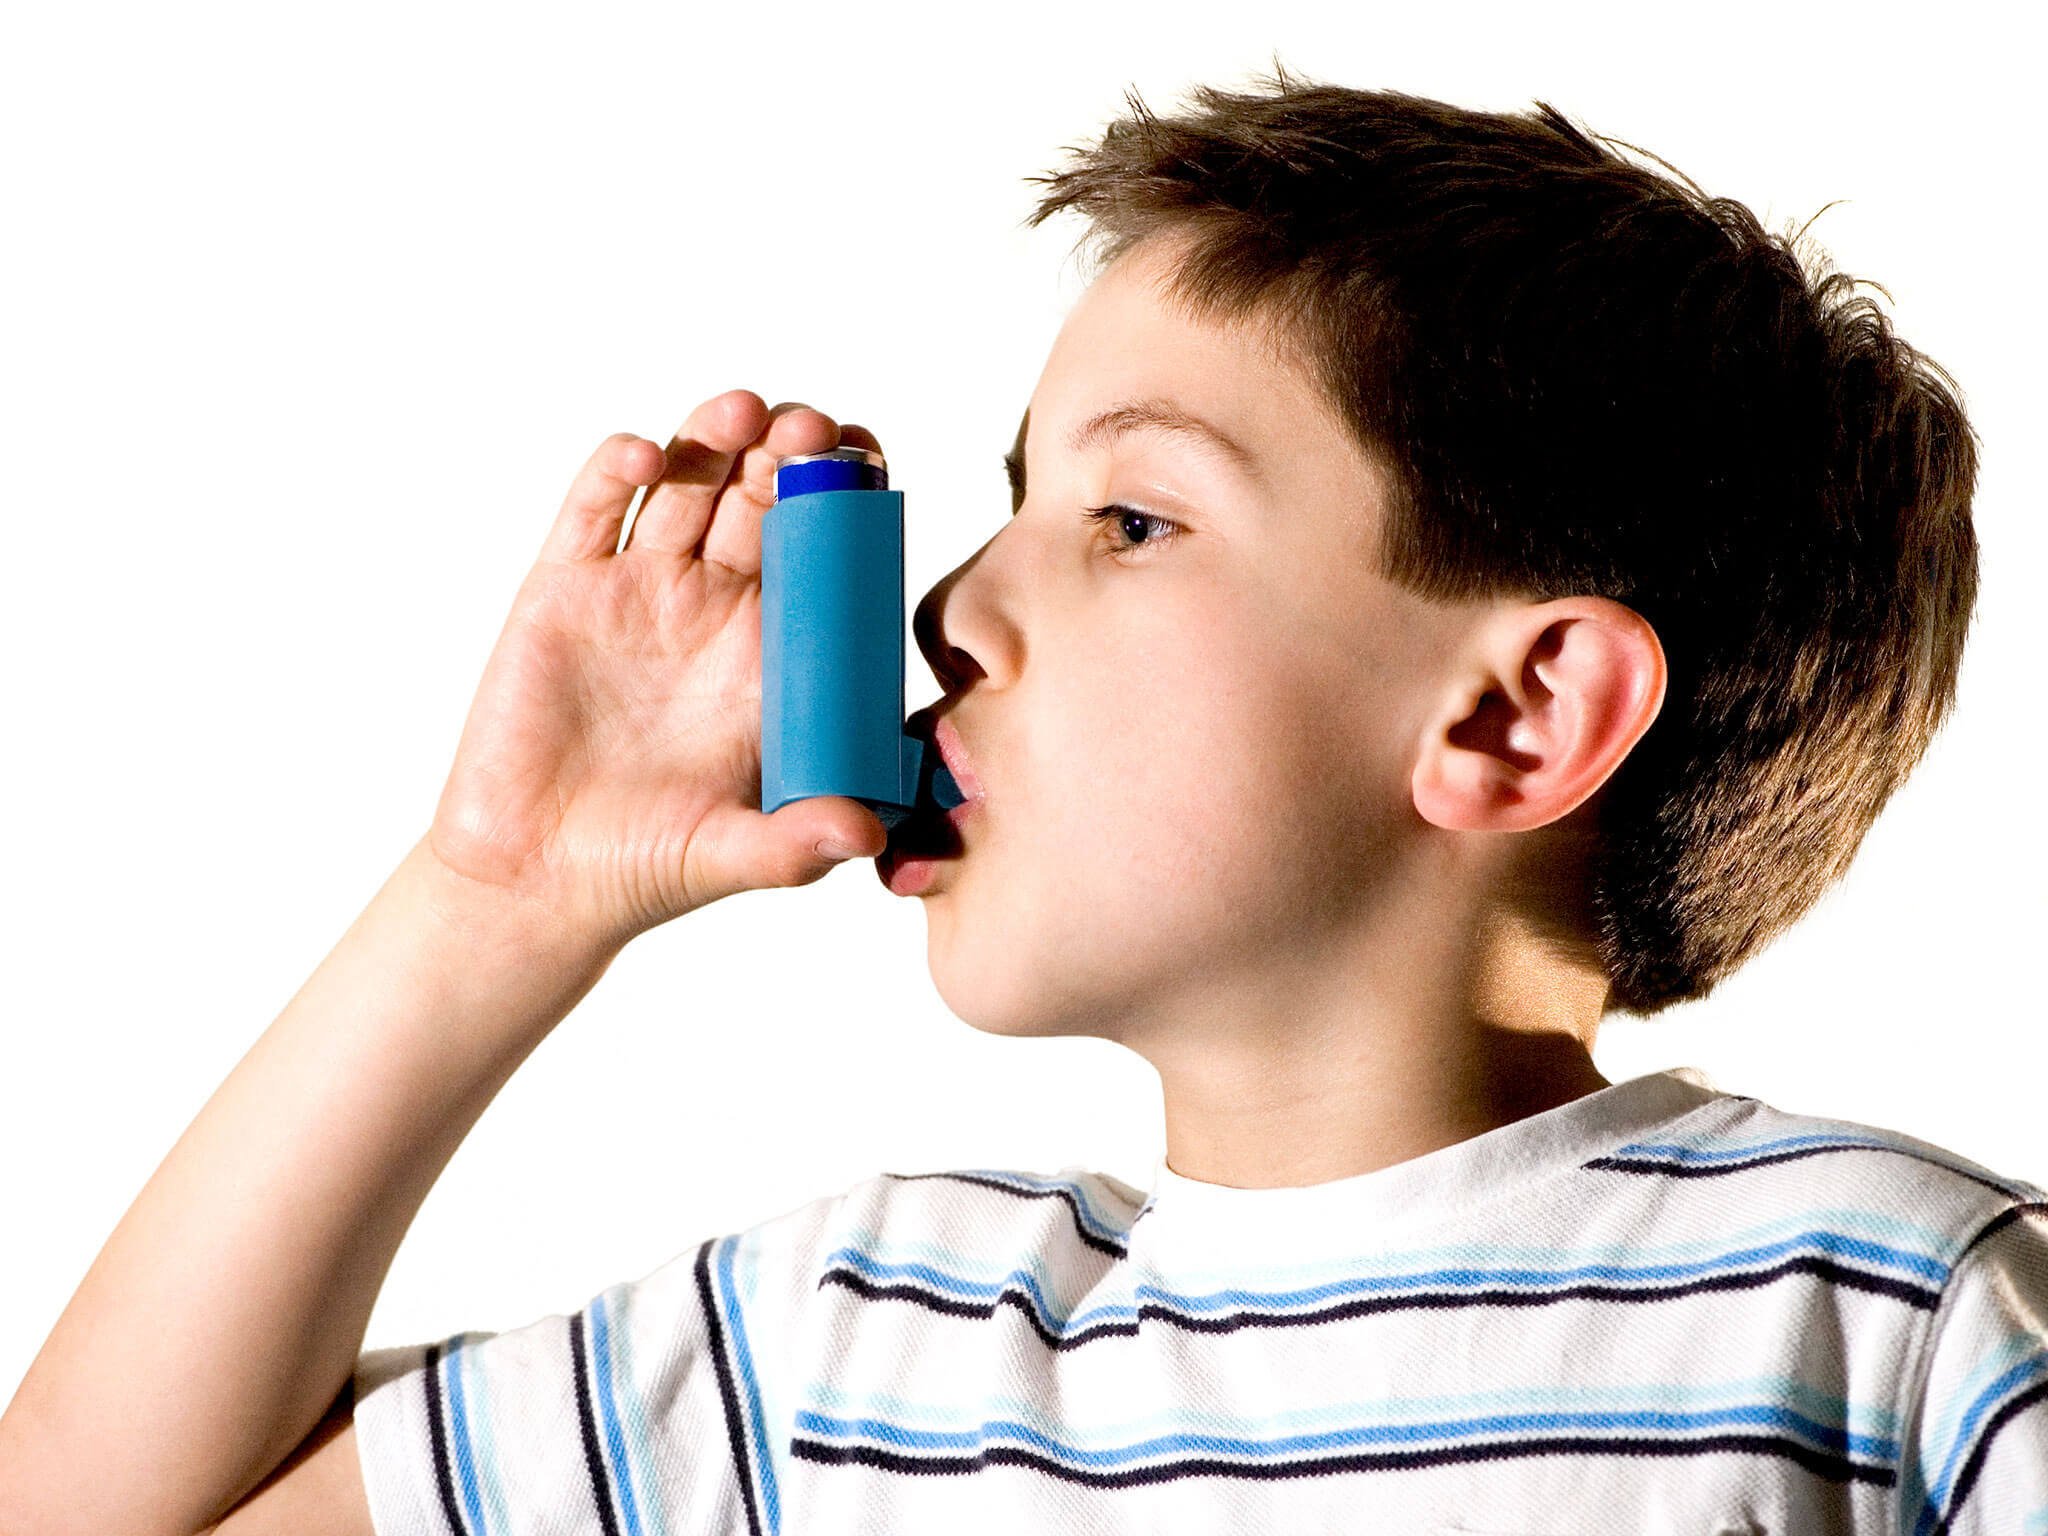 asma pada anak